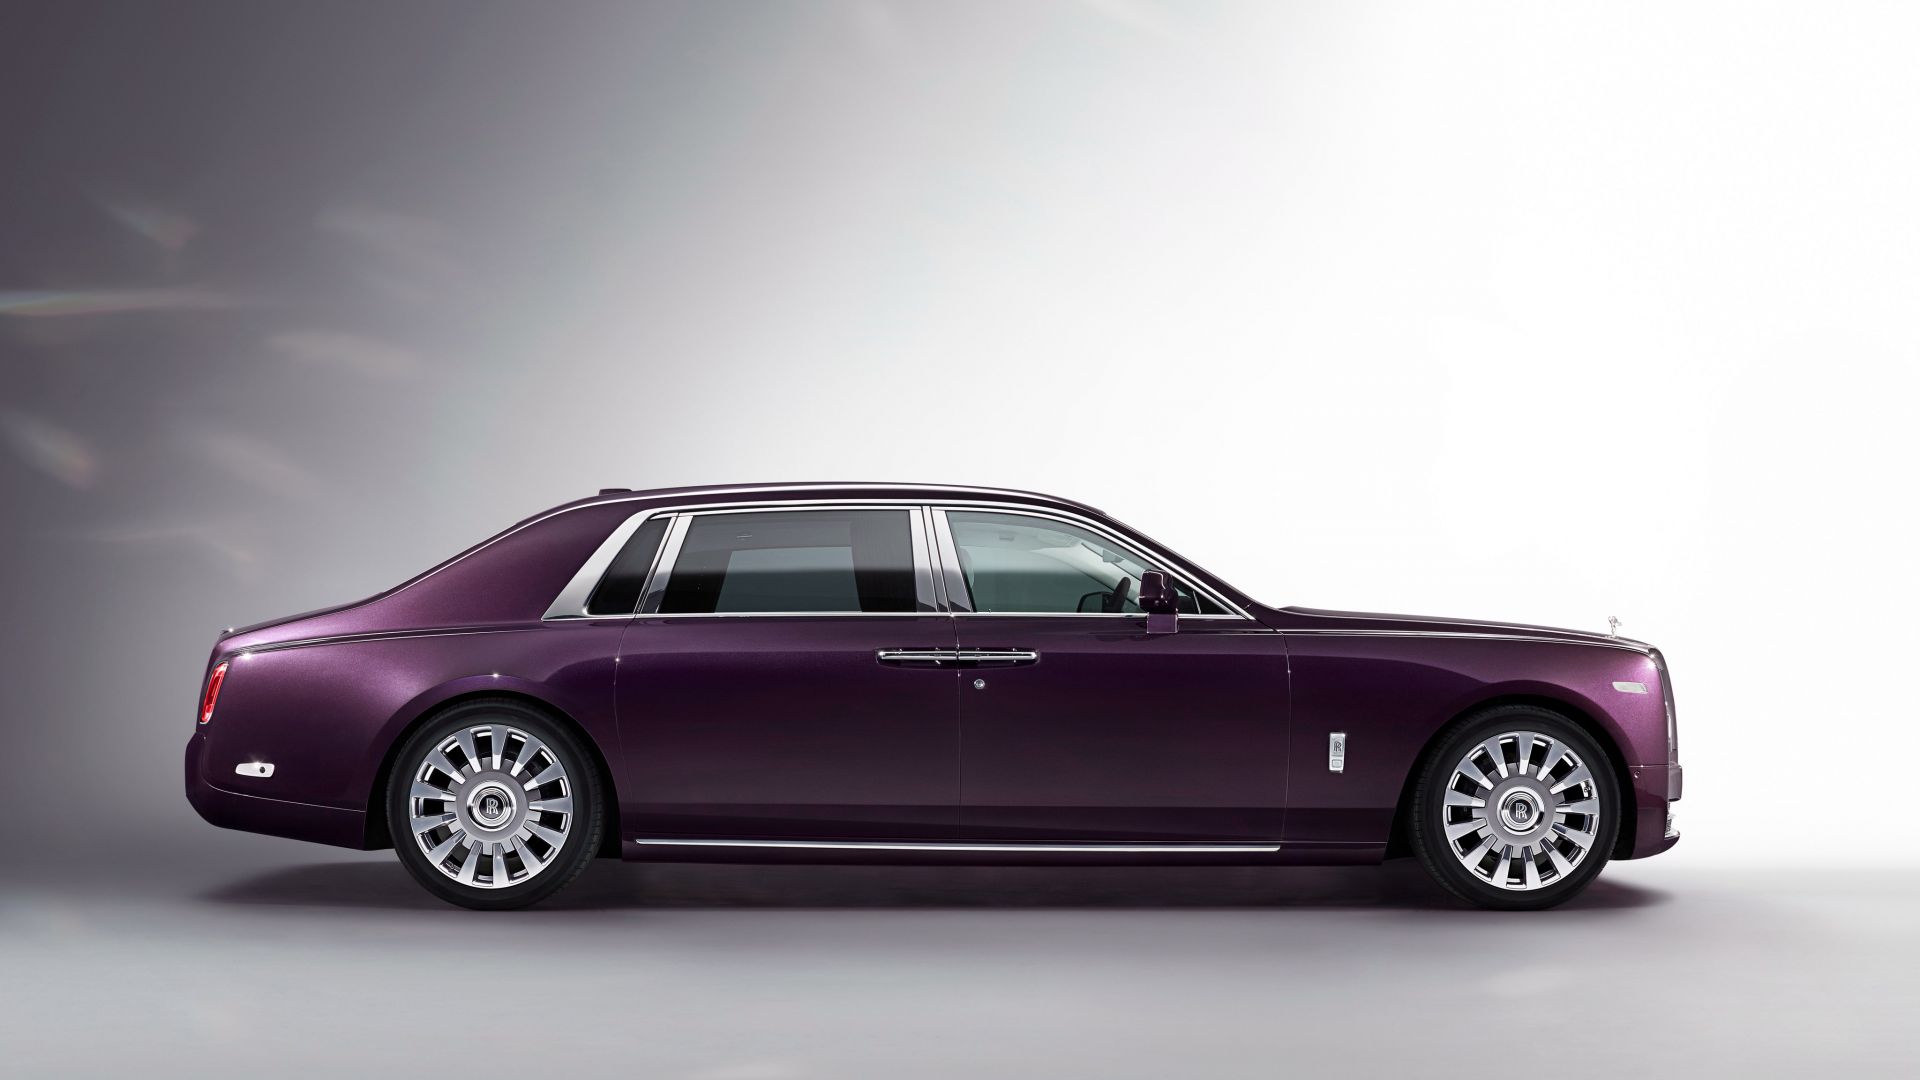 Wallpaper Rolls-Royce Phantom, side view, purple car